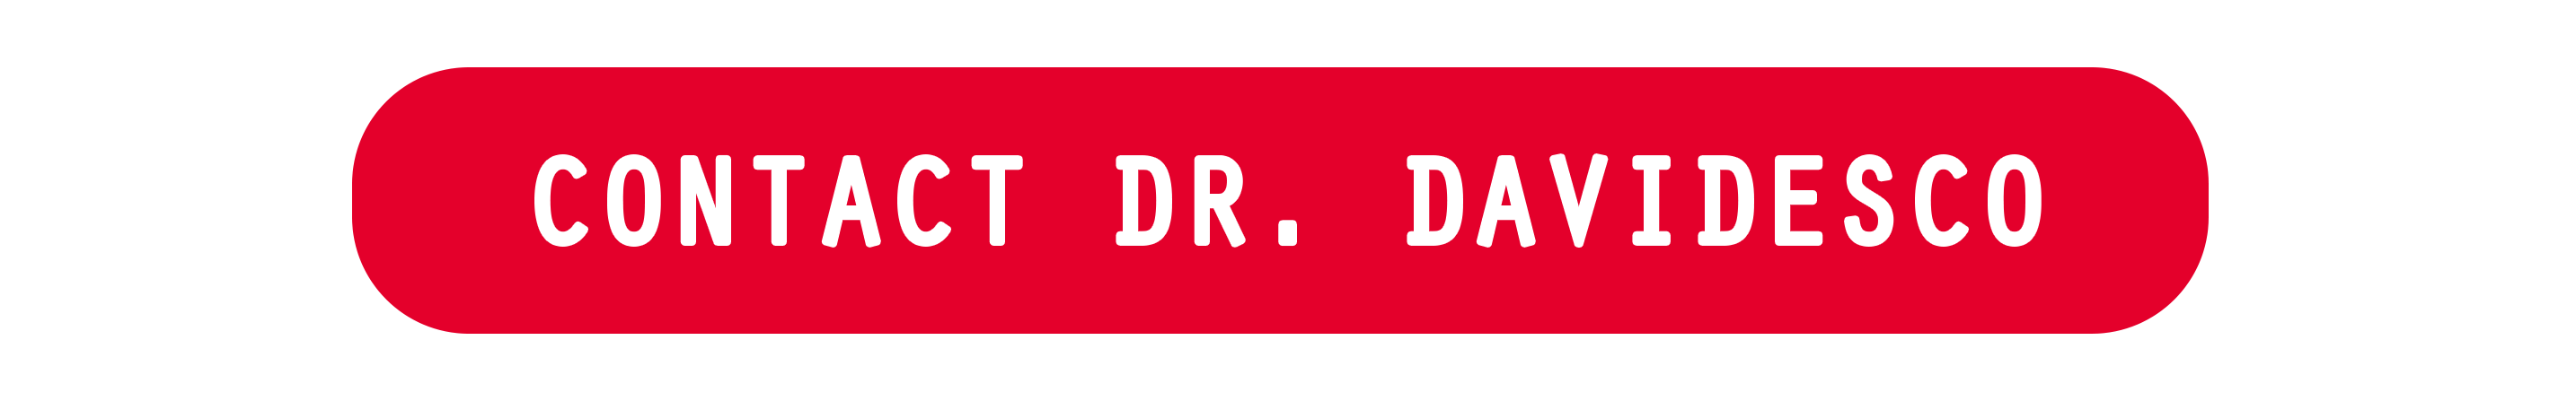 Contact Dr. Davidesco